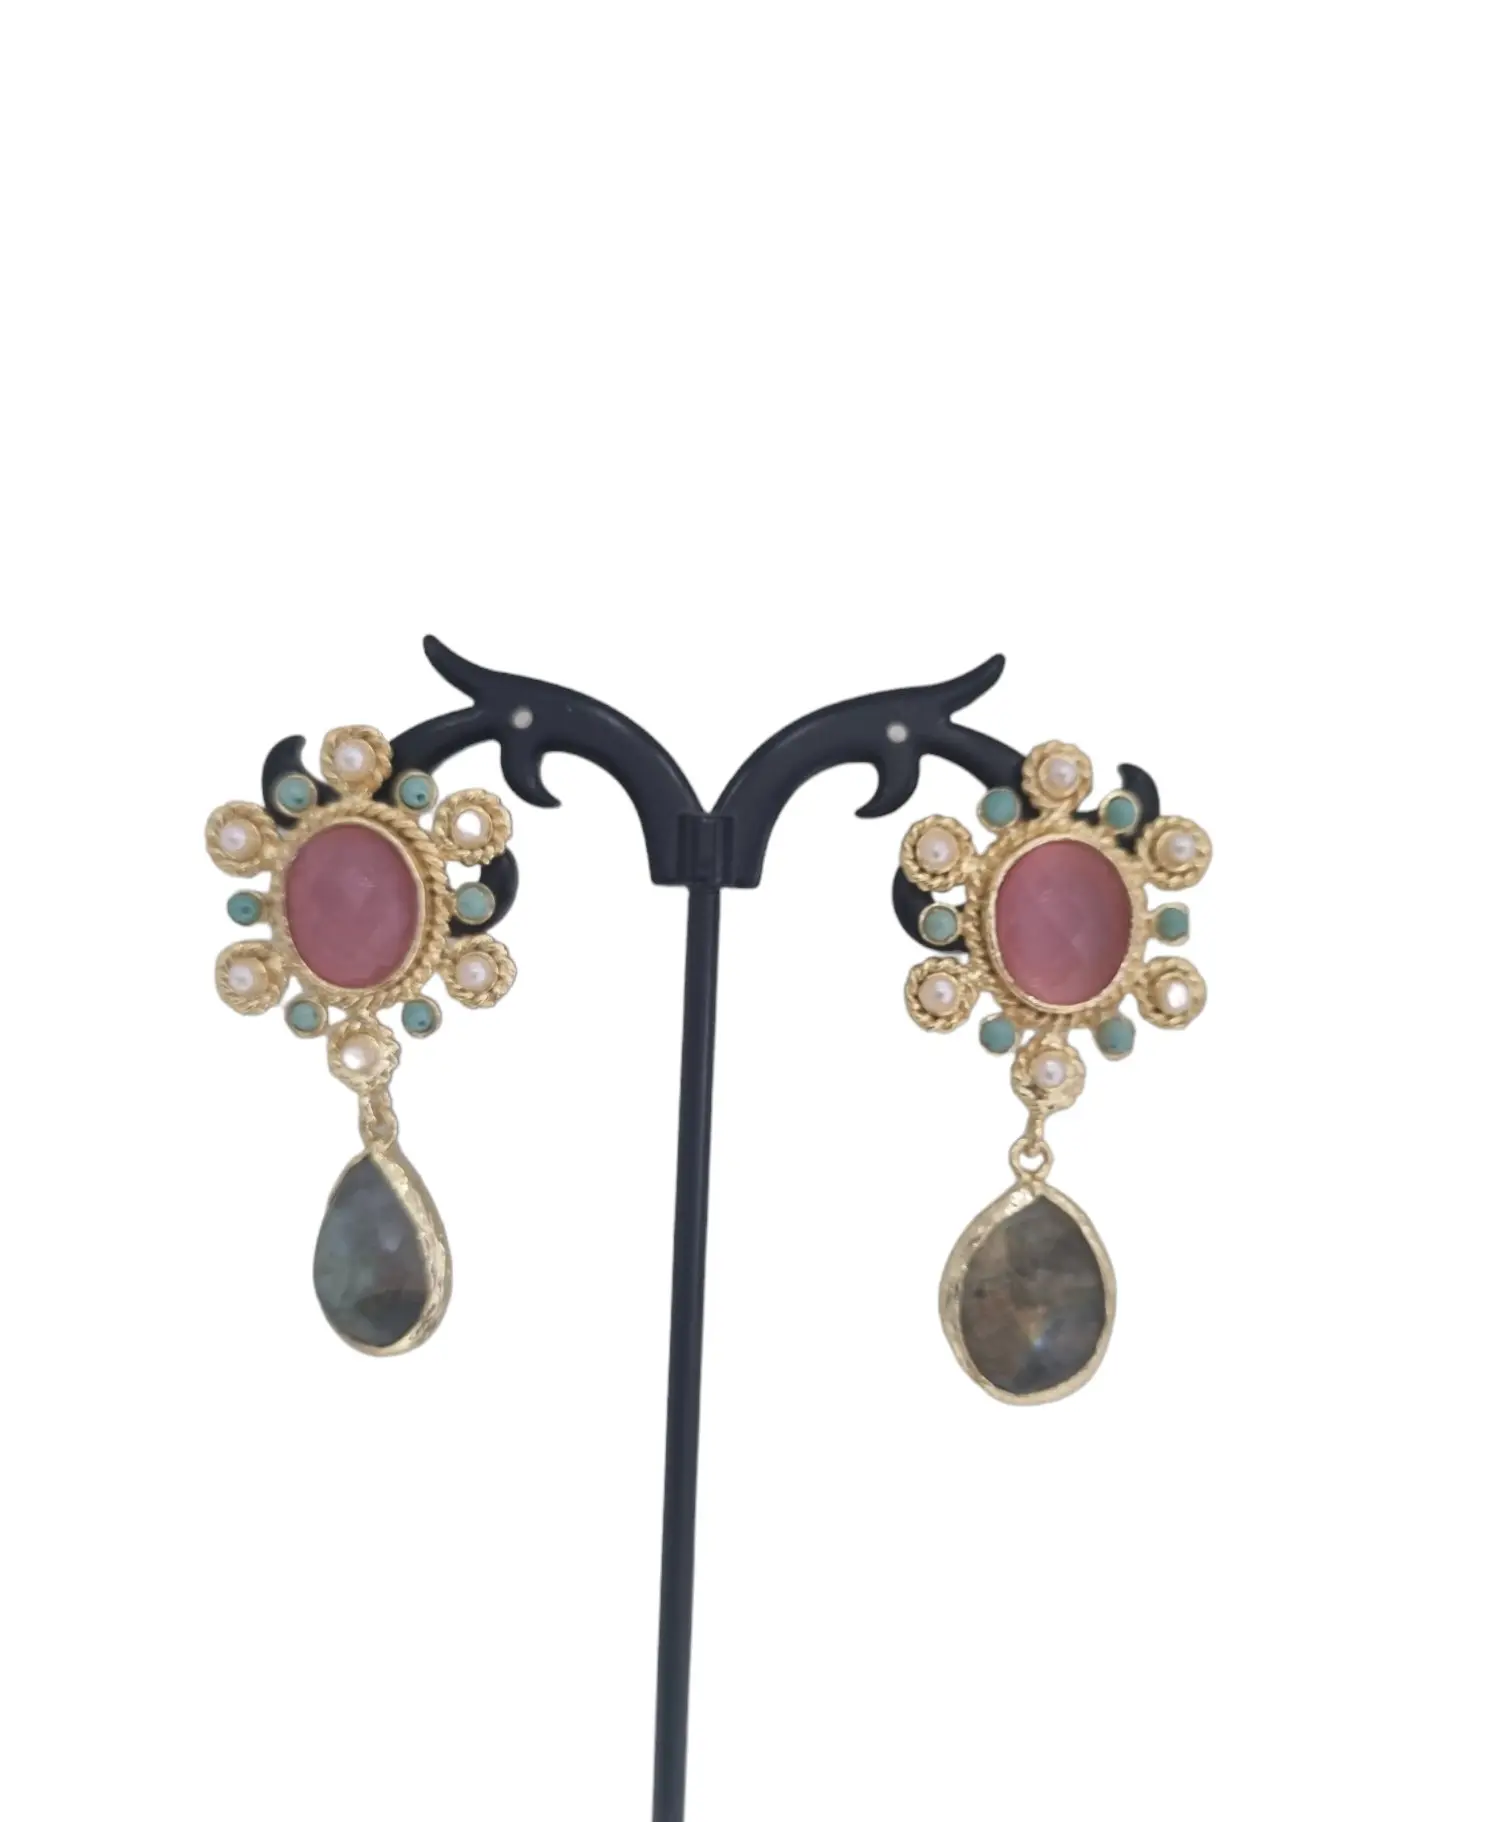 Orecchini realizzati con agata, perle di maiorca, turchesi e labradorite incastonati su ottone.
Lunghezza 4.5cm
Peso 7gr